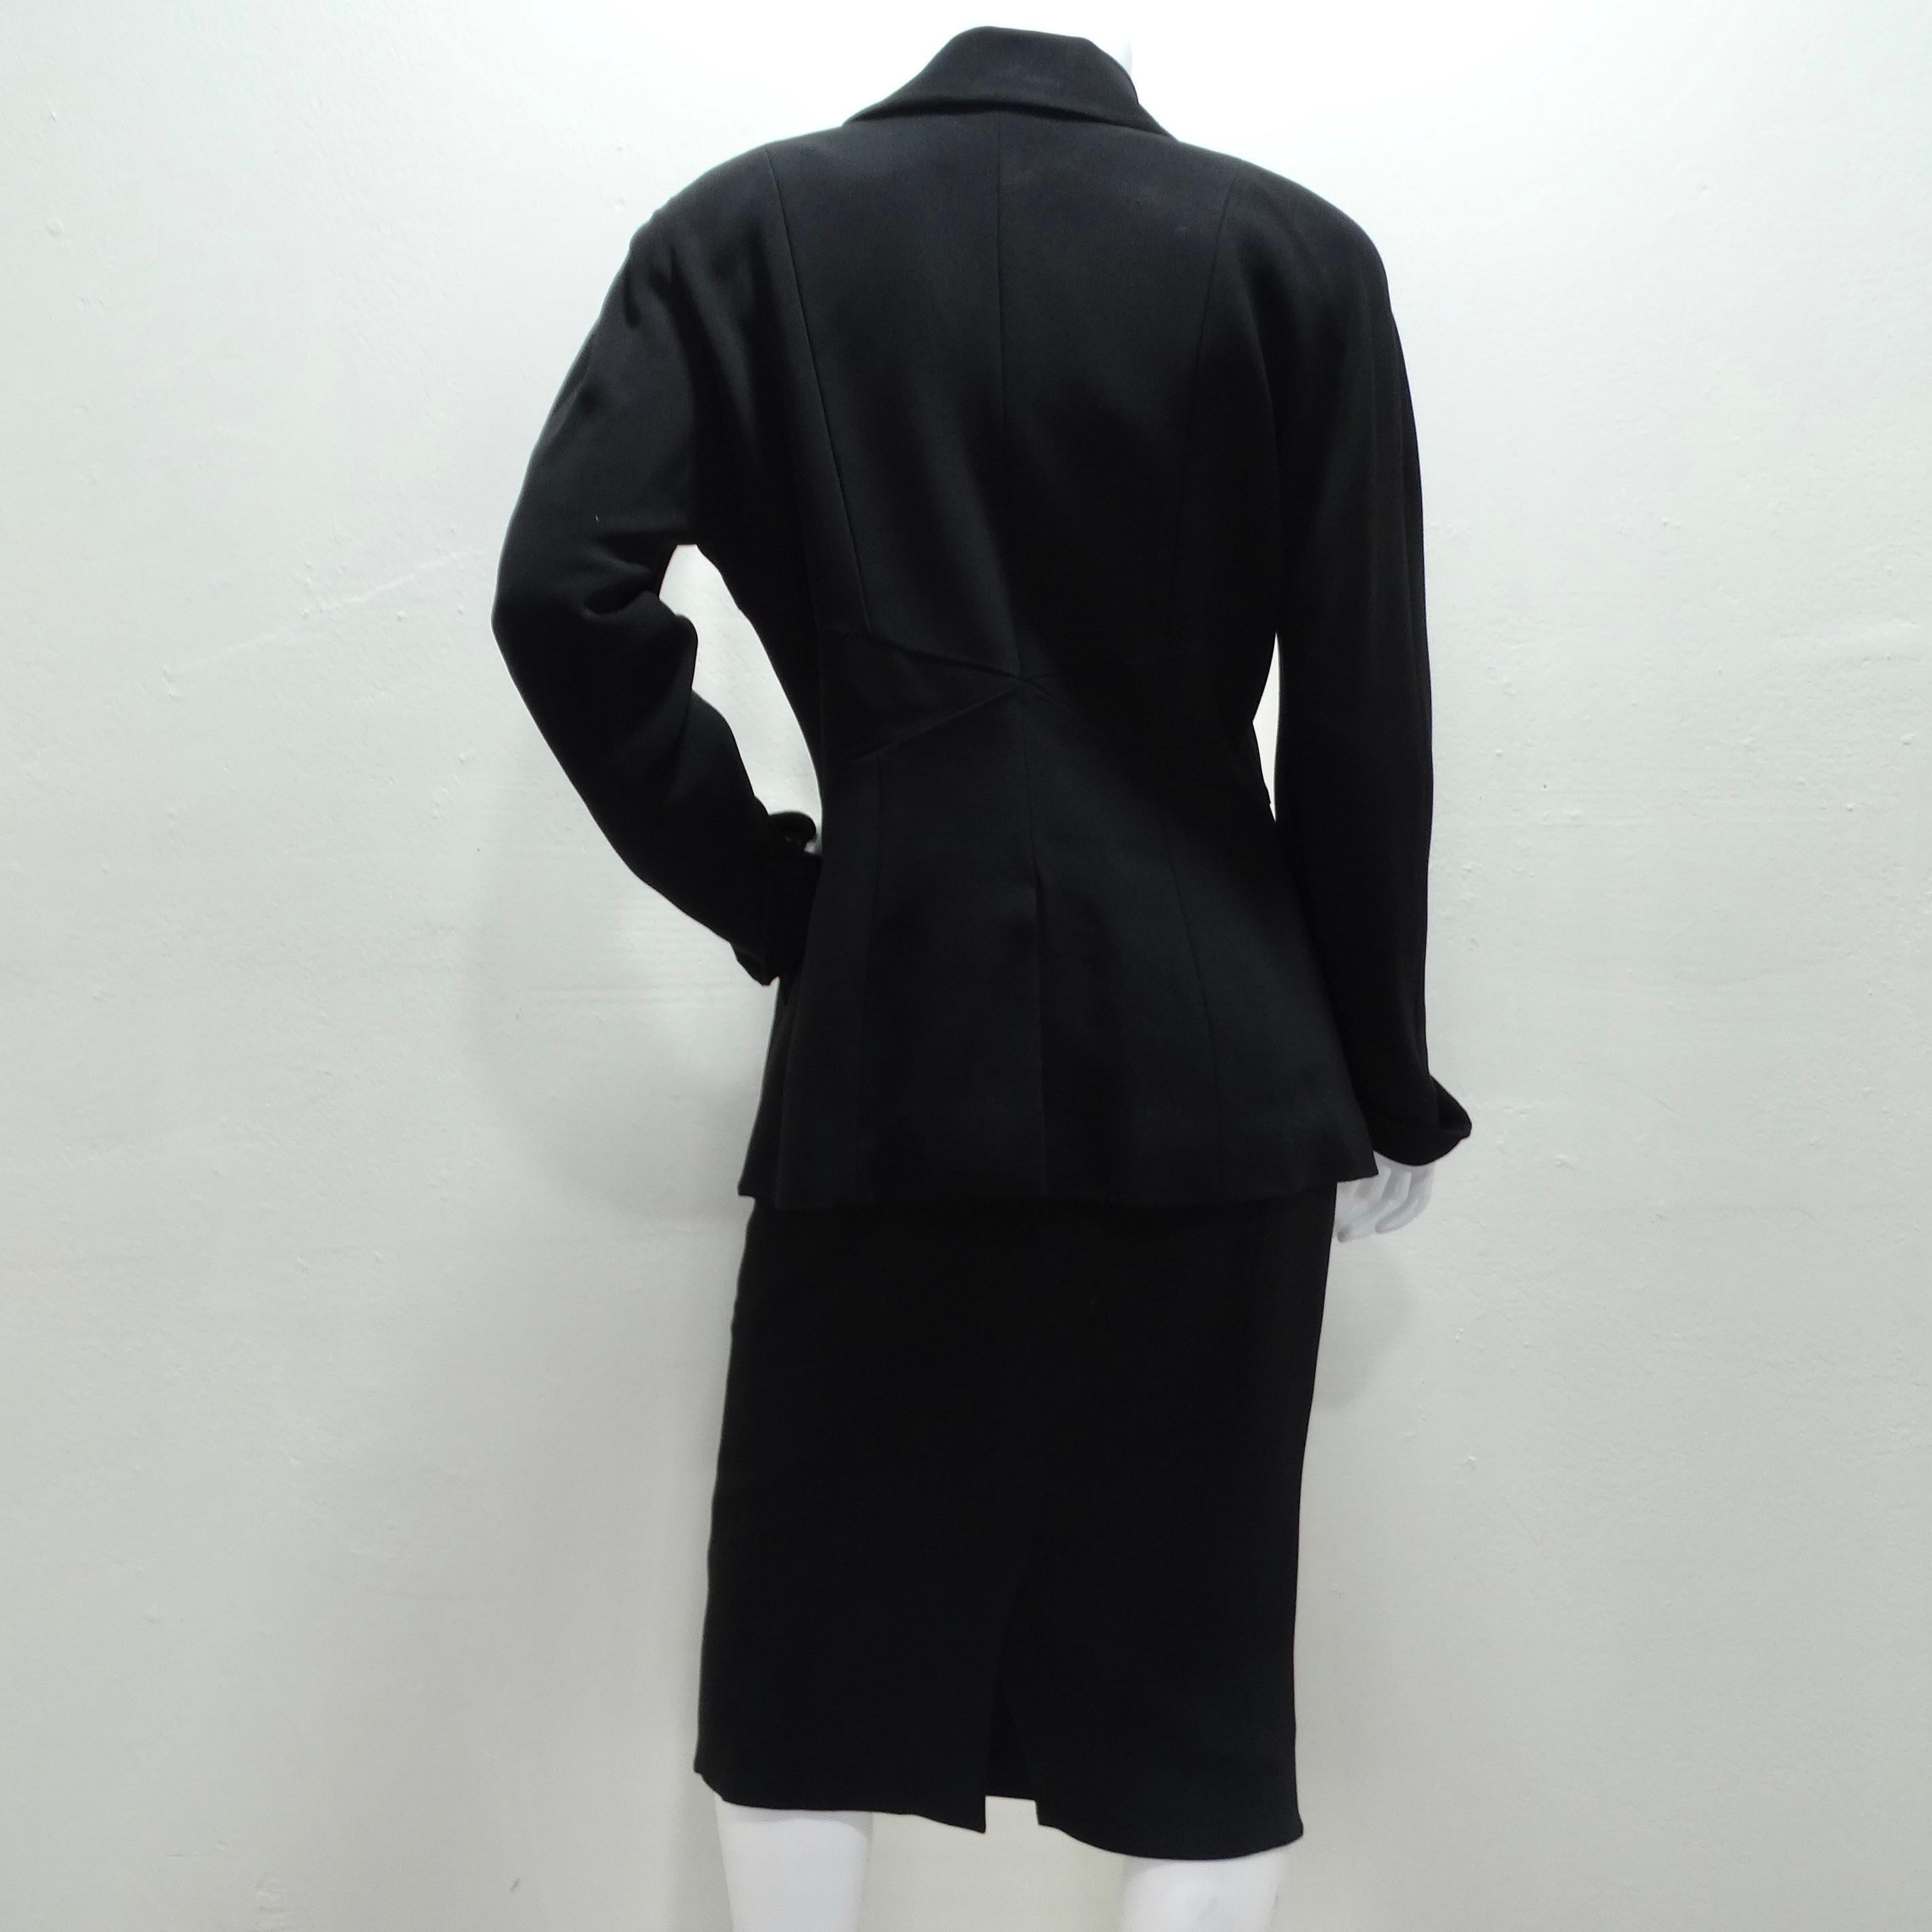 Karl Lagerfeld 1980s Asymmetric Black Skirt Suit For Sale 4